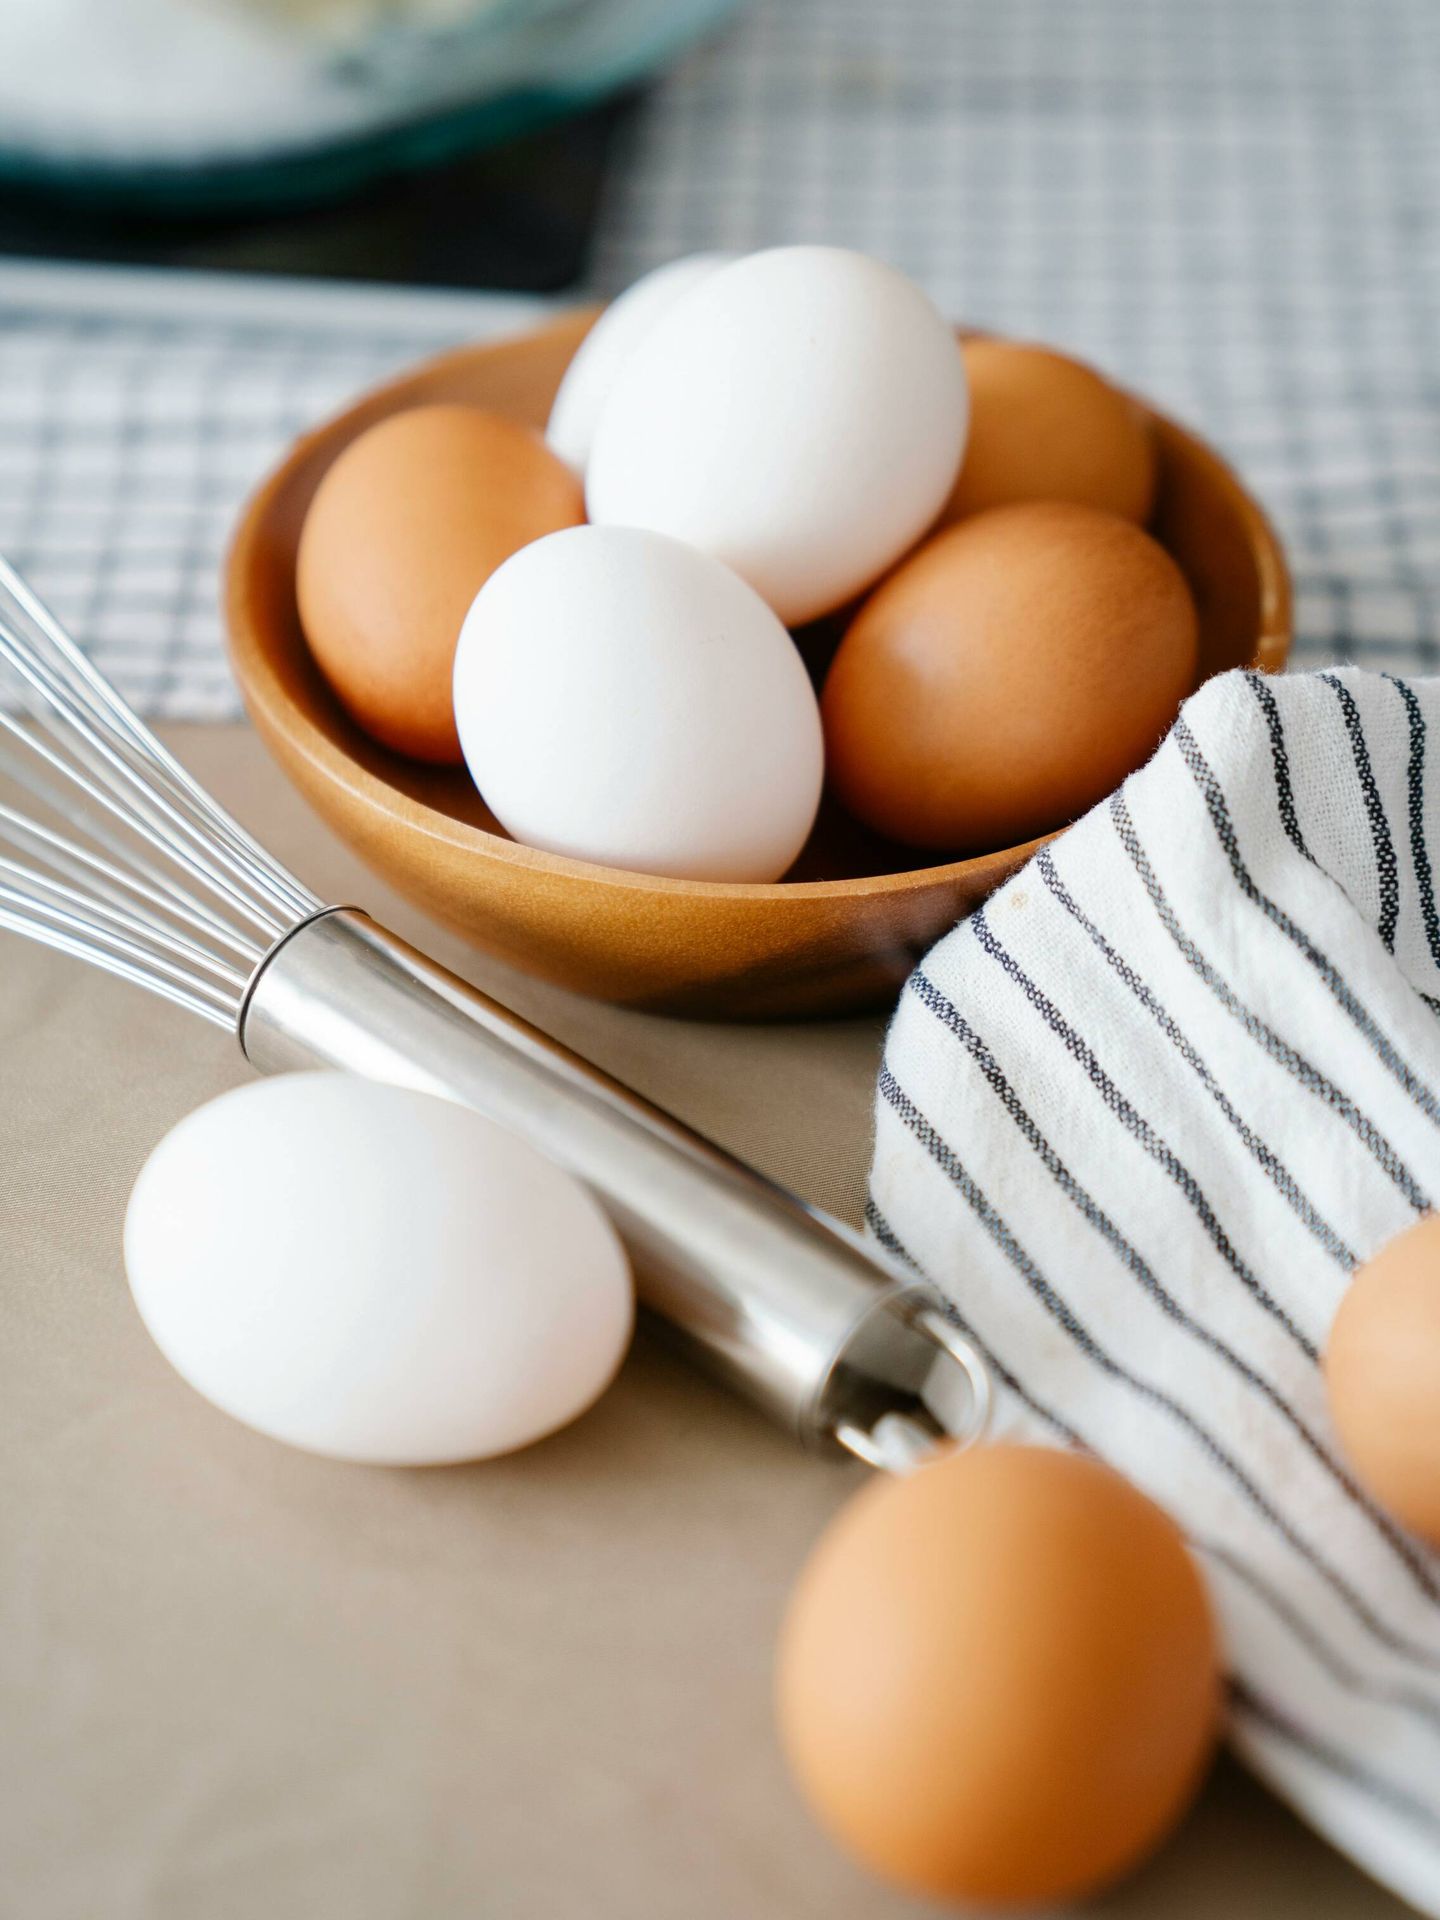 Los huevos son el aliado perfecto para tus cenas. (Pexels / Felicity Tai)